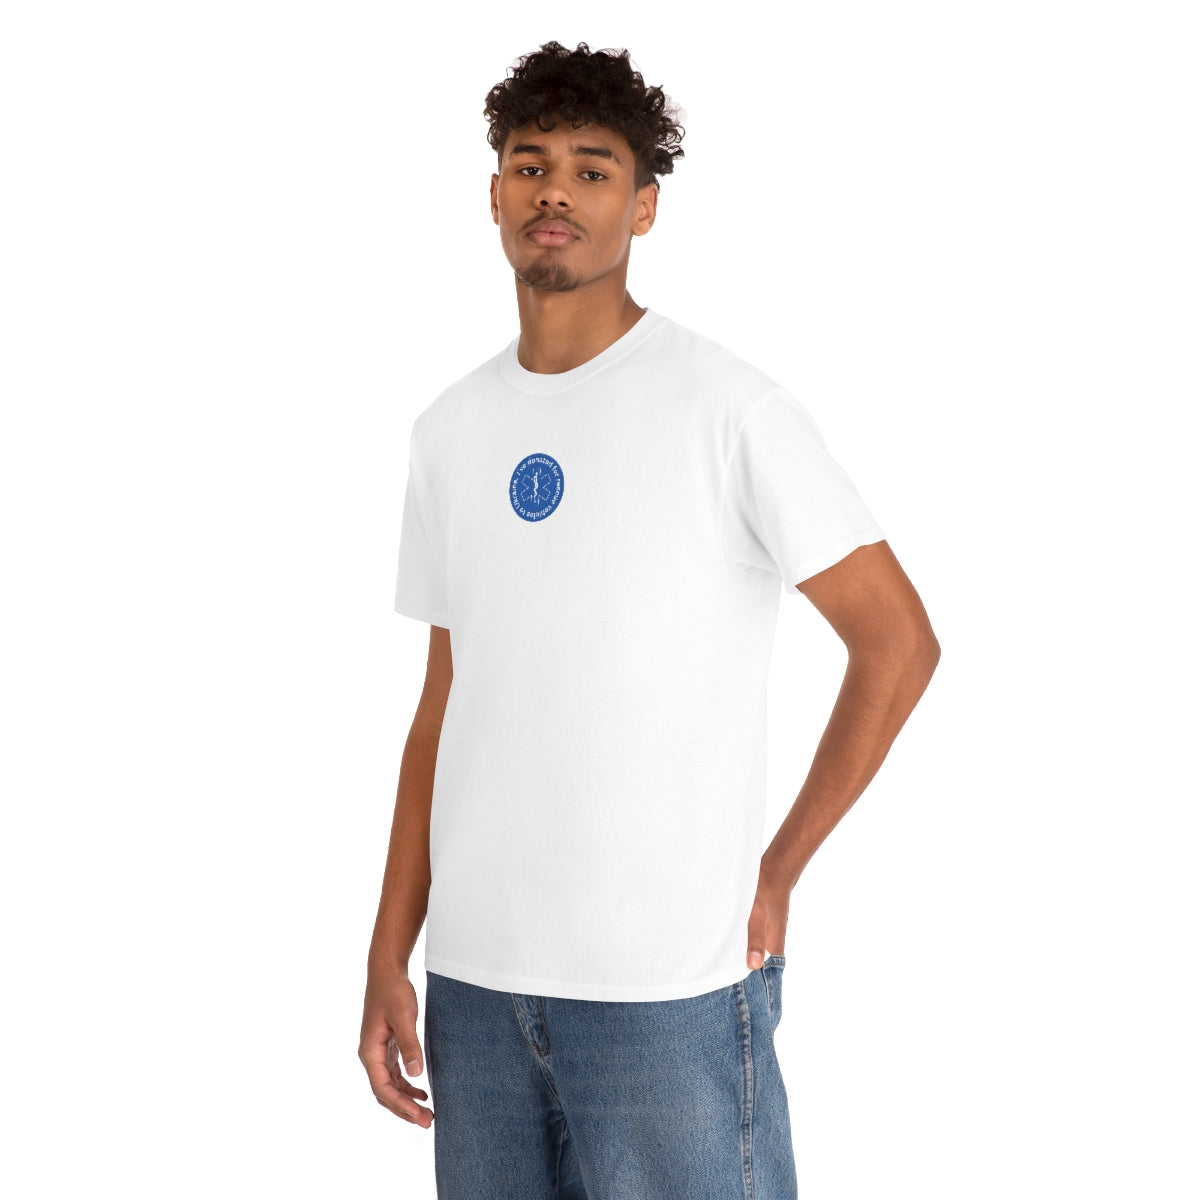 Gespendet - Unisex-T-Shirt